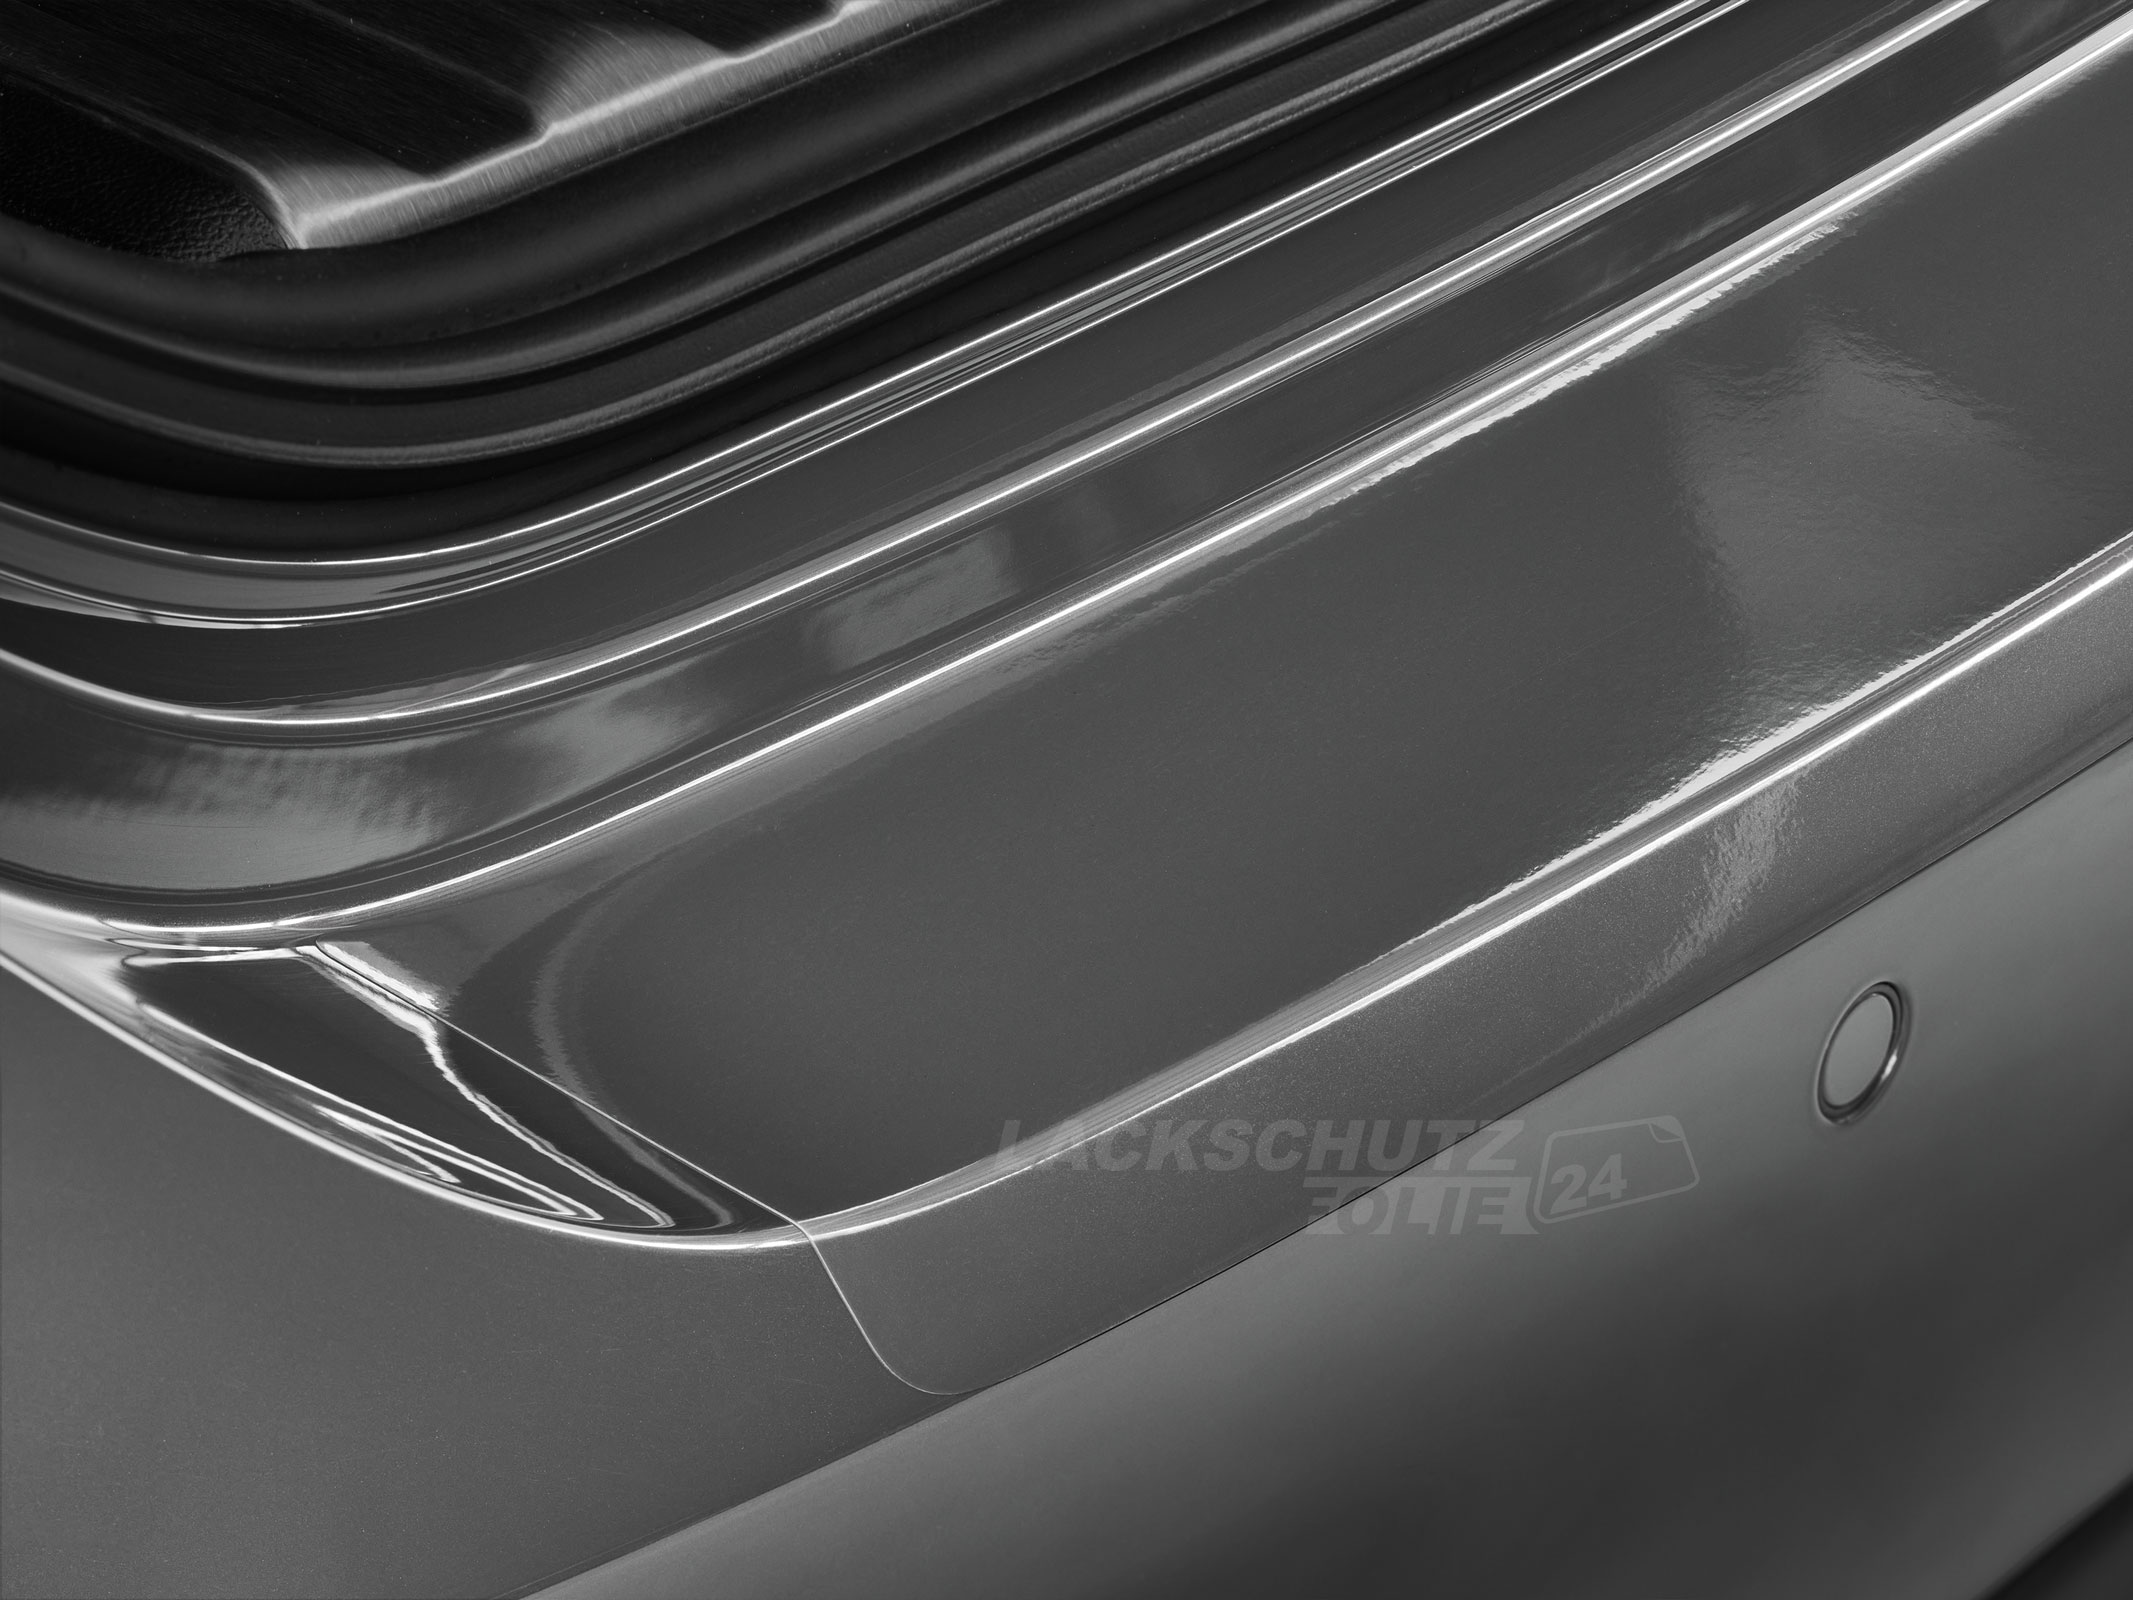 Ladekantenschutzfolie - Transparent Glatt Hochglänzend 150 µm stark für BMW 2er Cabrio Typ F23, BJ 09/2014-2021